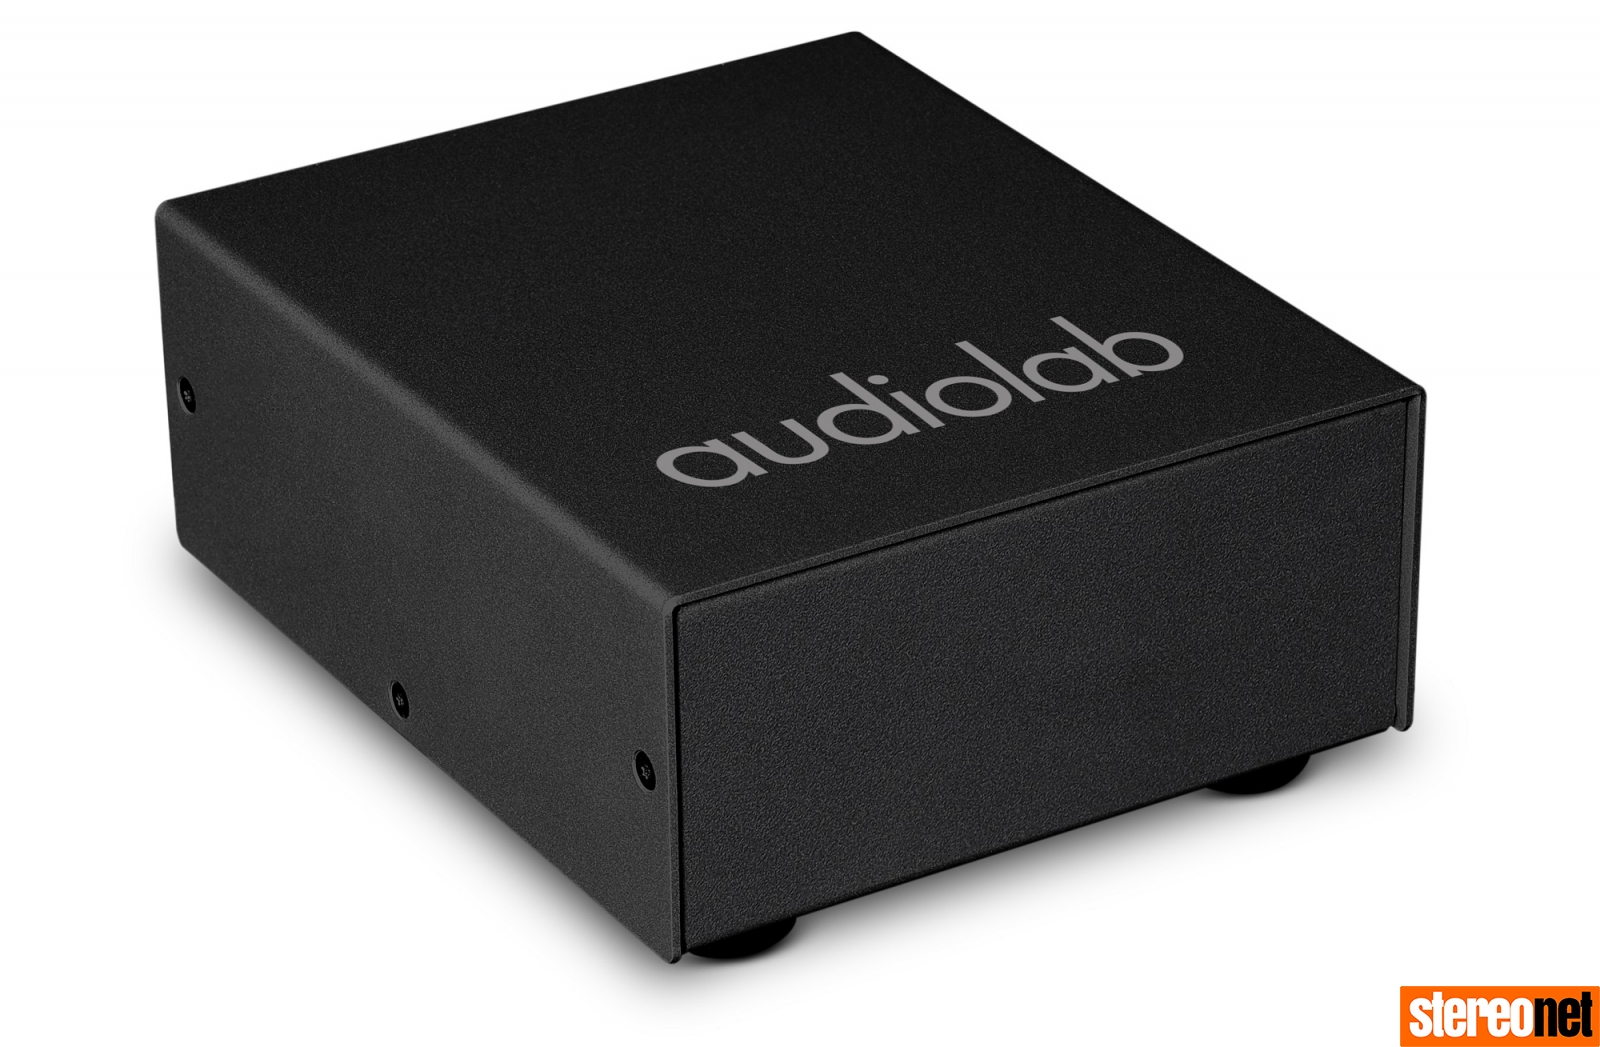 Audiolab's DC Block promises to banish RFI/ EMI while ...